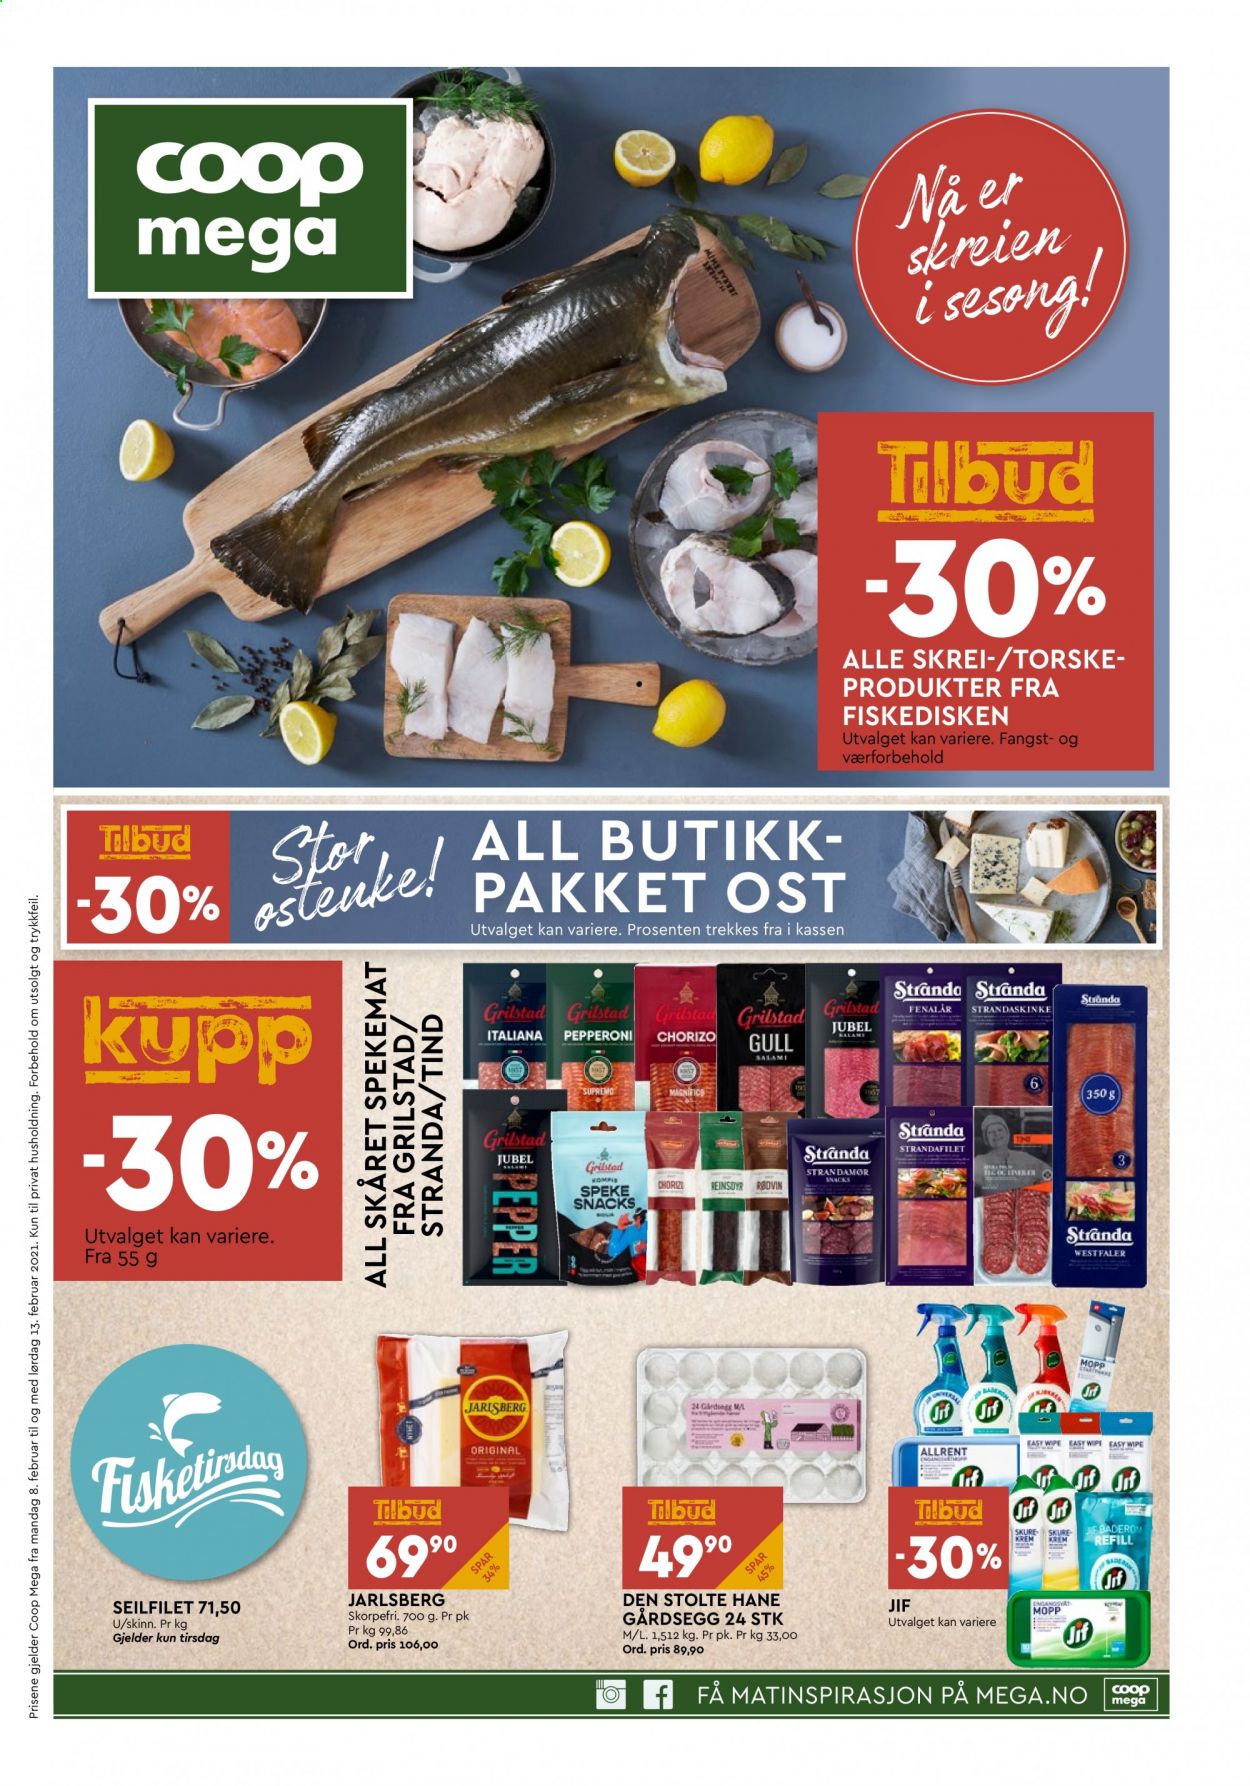 thumbnail - Kundeavis Coop Mega - 8.2.2021 - 13.2.2021 - Produkter fra tilbudsaviser - chorizo, salami, spekemat, pepperoni, fenalår, Jarlsberg, ost, krem. Side 1.